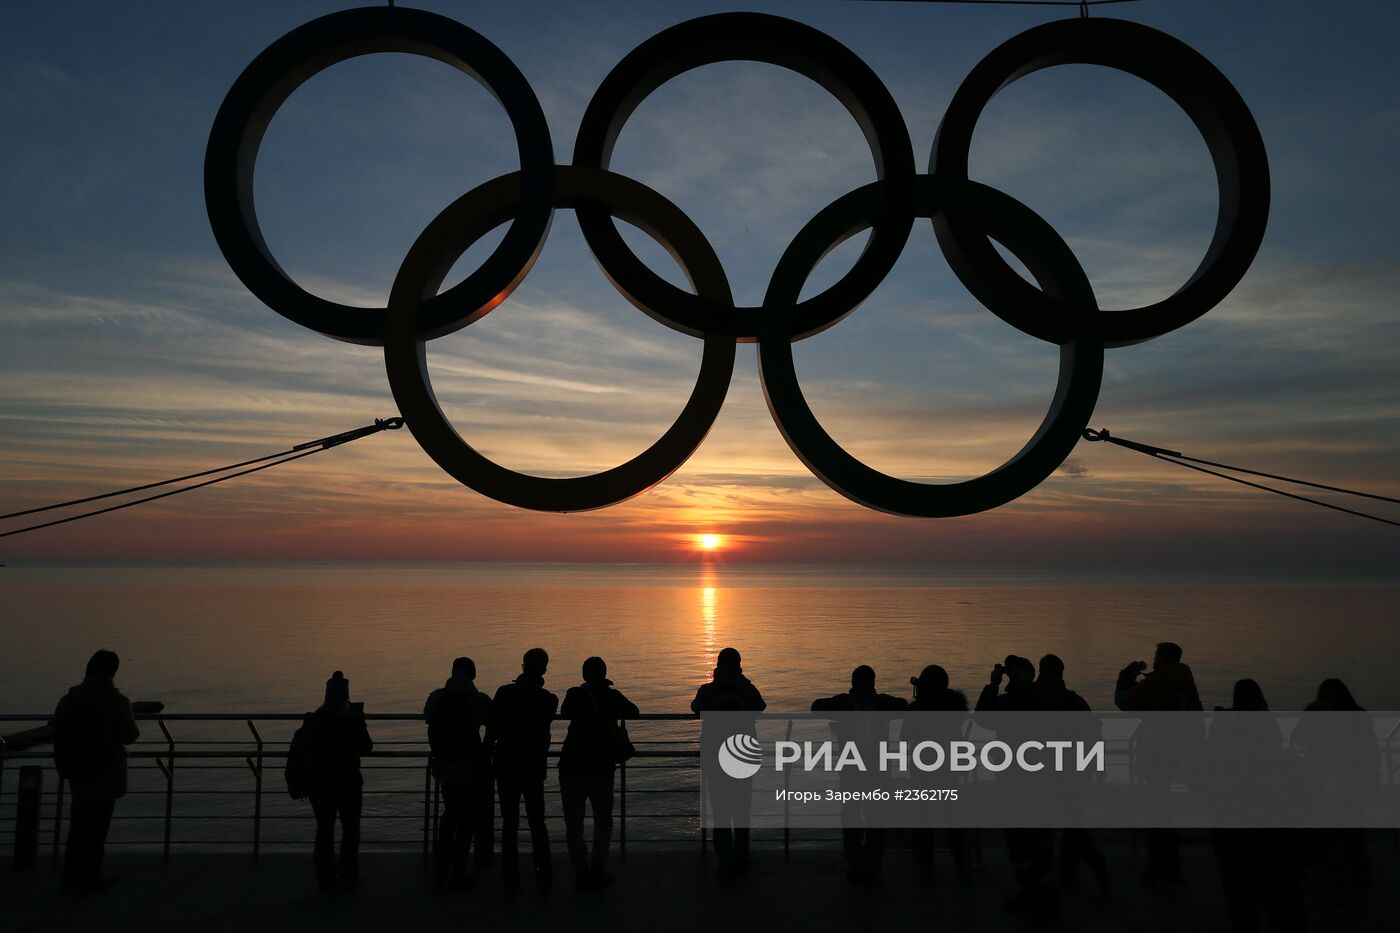 Олимпийские кольца на набережной Адлерского района Сочи.